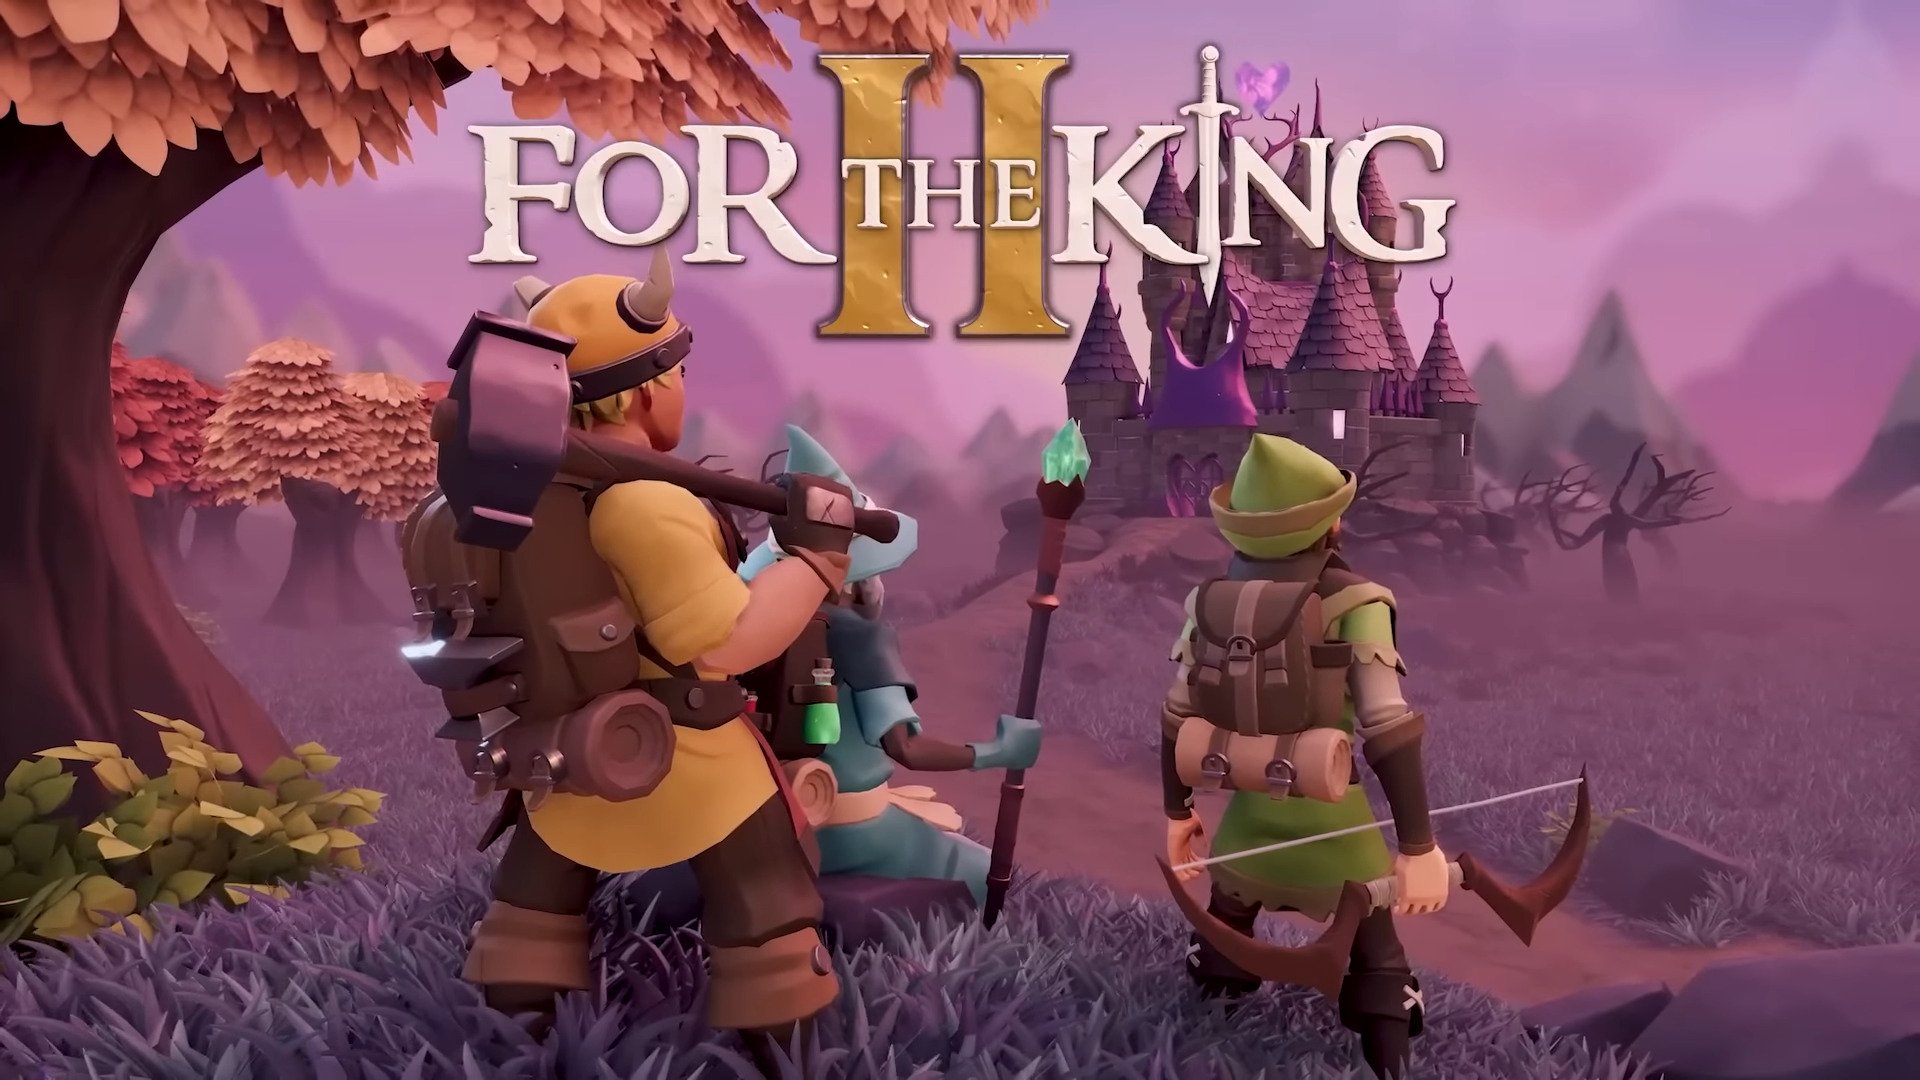 回合制战略 RPG《为了国王》续作《为了国王 2》释出新宣传影片 预定今年问世插图